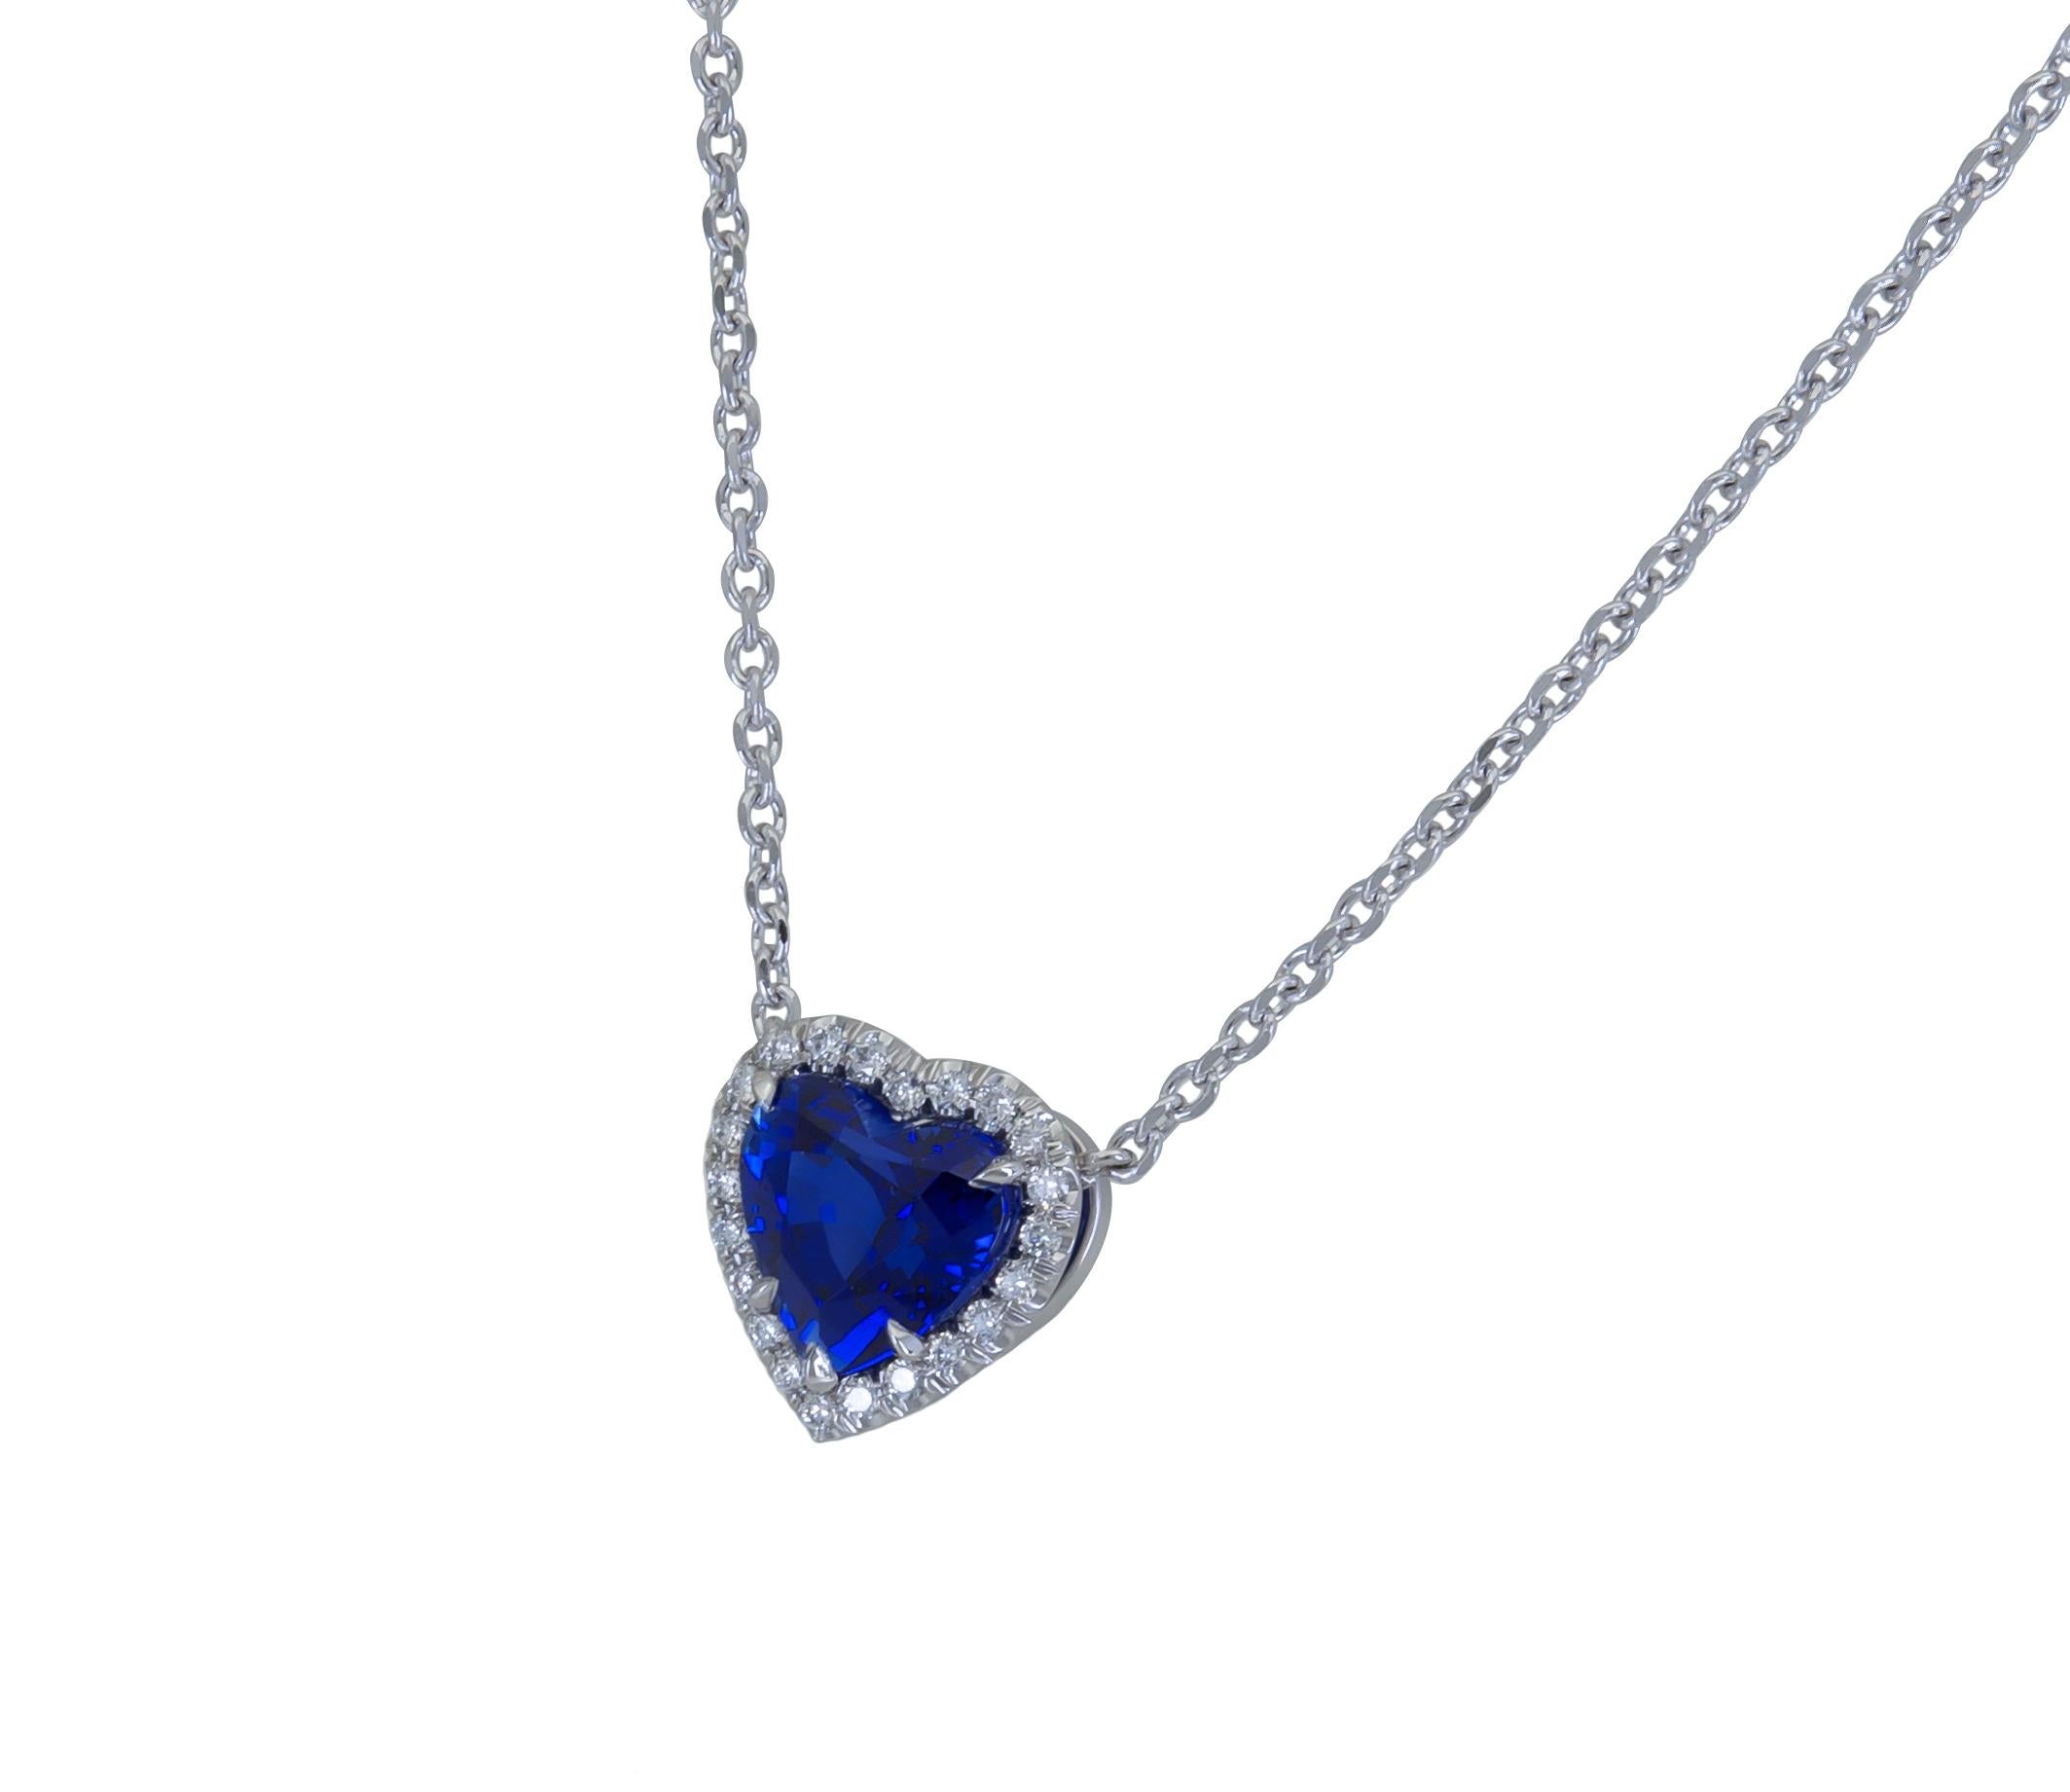 Ein modisches Schmuckstück mit einem leuchtend blauen Saphir in Herzform, umgeben von einer einzigen Reihe runder Brillanten. Hergestellt aus Platin.
Der blaue Saphir wiegt 2,77 Karat und ist von C.Dunaigre als lebhaft blau zertifiziert, Herkunft